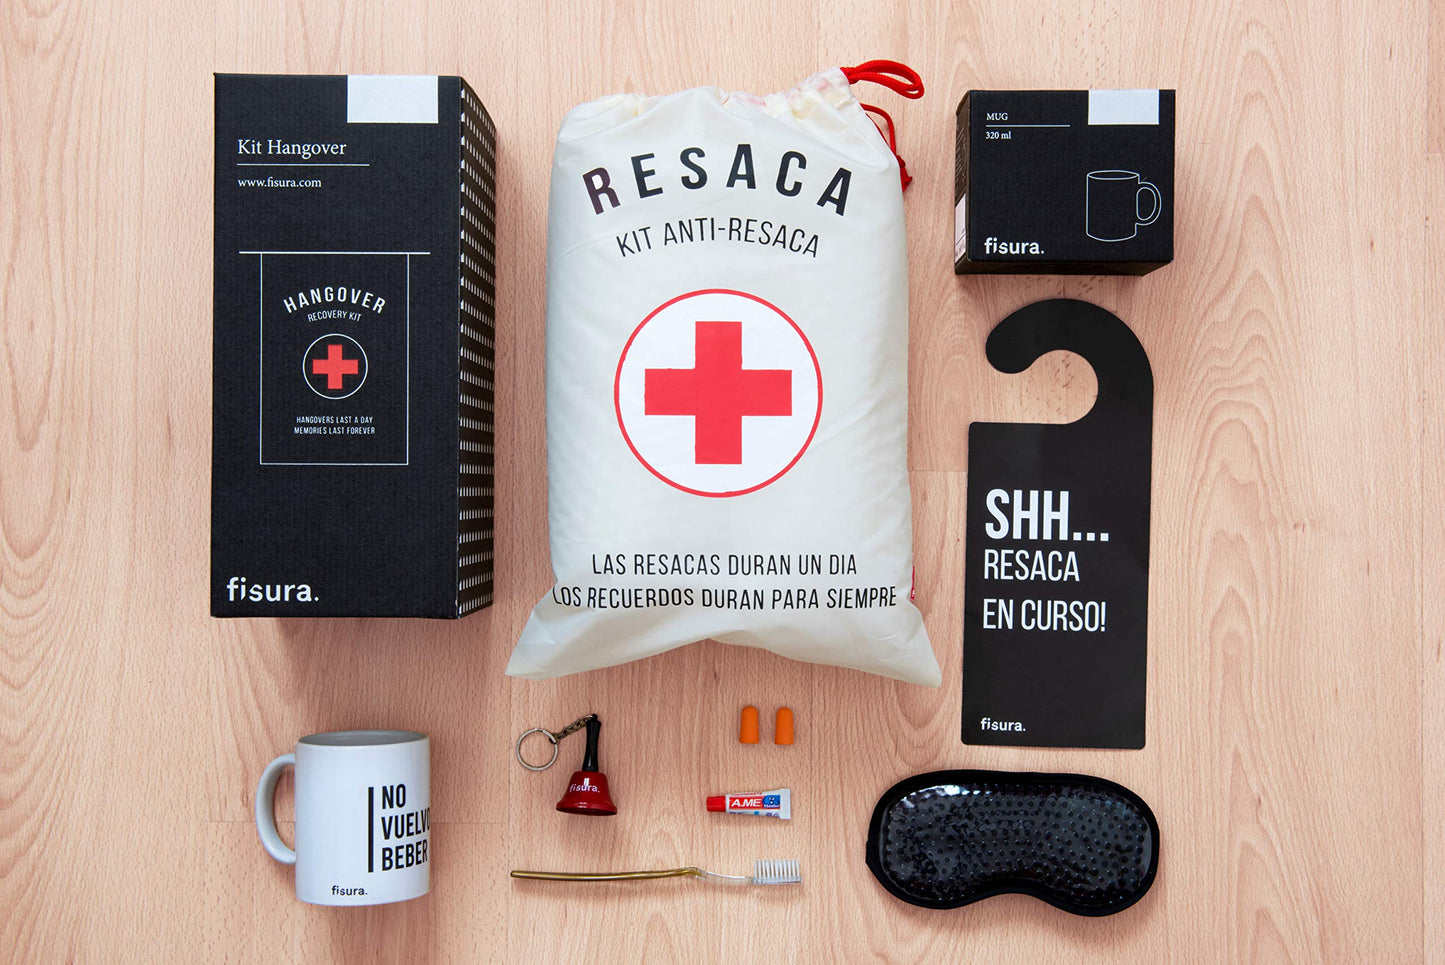 Fisura - Kit de resaca en español. Kit de regalo para bodas, cumpleños y fiestas. Kit de supervivencia unisex. Regalo gracioso para amigos. 8 productos